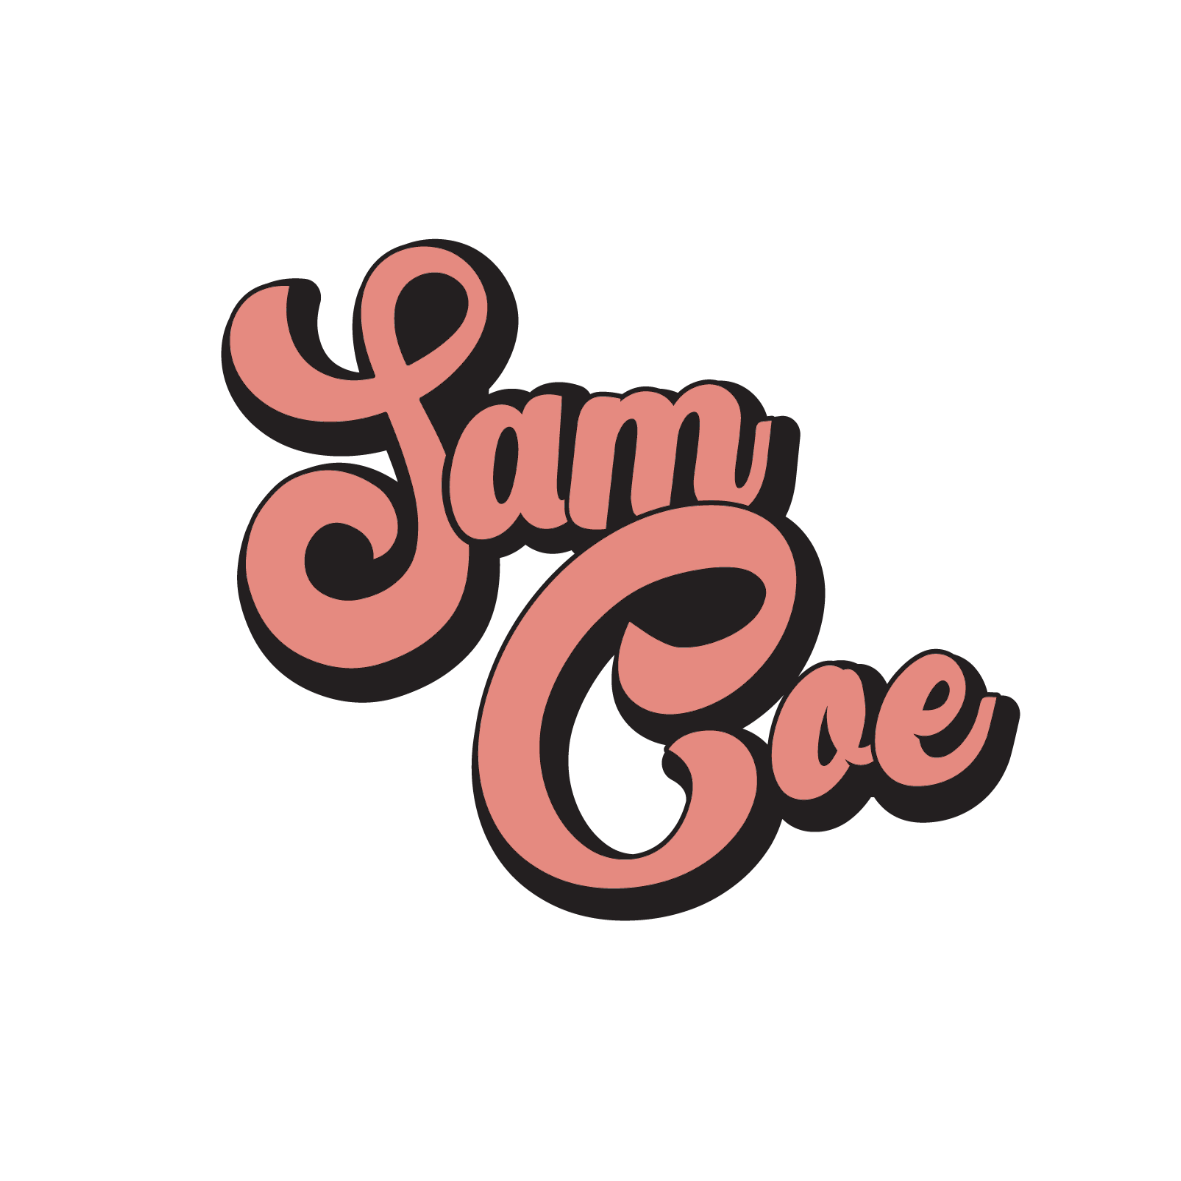 Sam Coe Album Launch